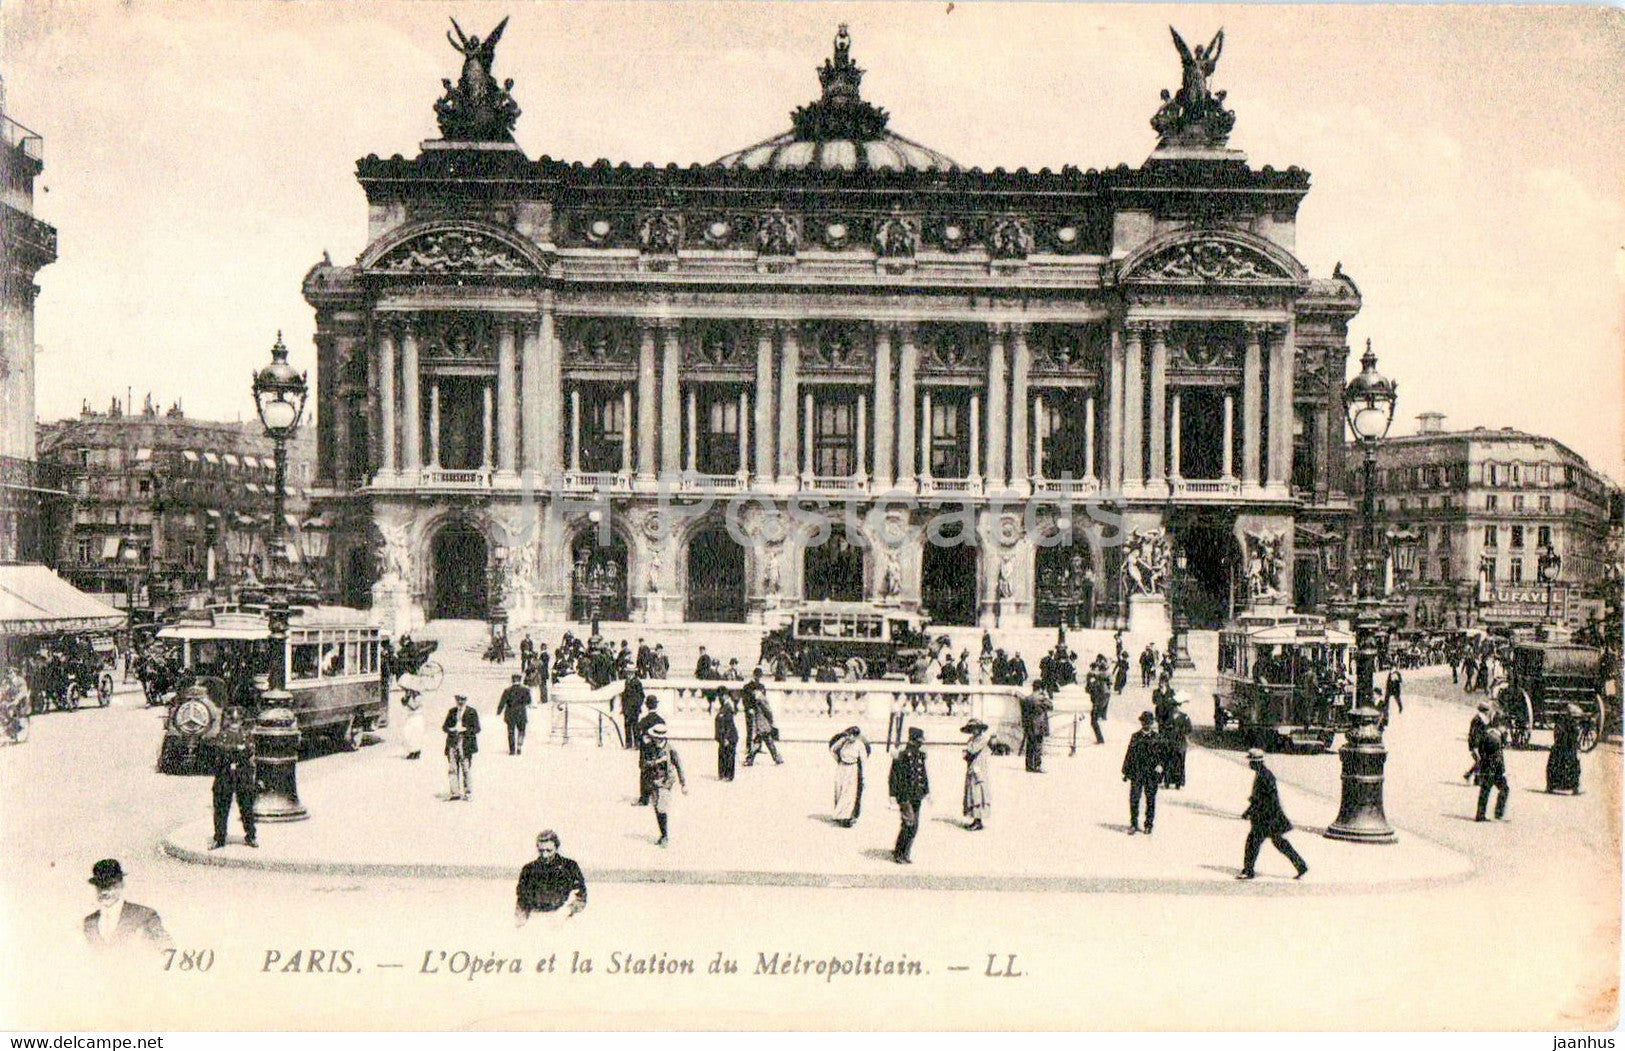 Paris - L'Opera et la Station du Metropolitain - theatre - tram - 780 - old postcard - France - unused - JH Postcards